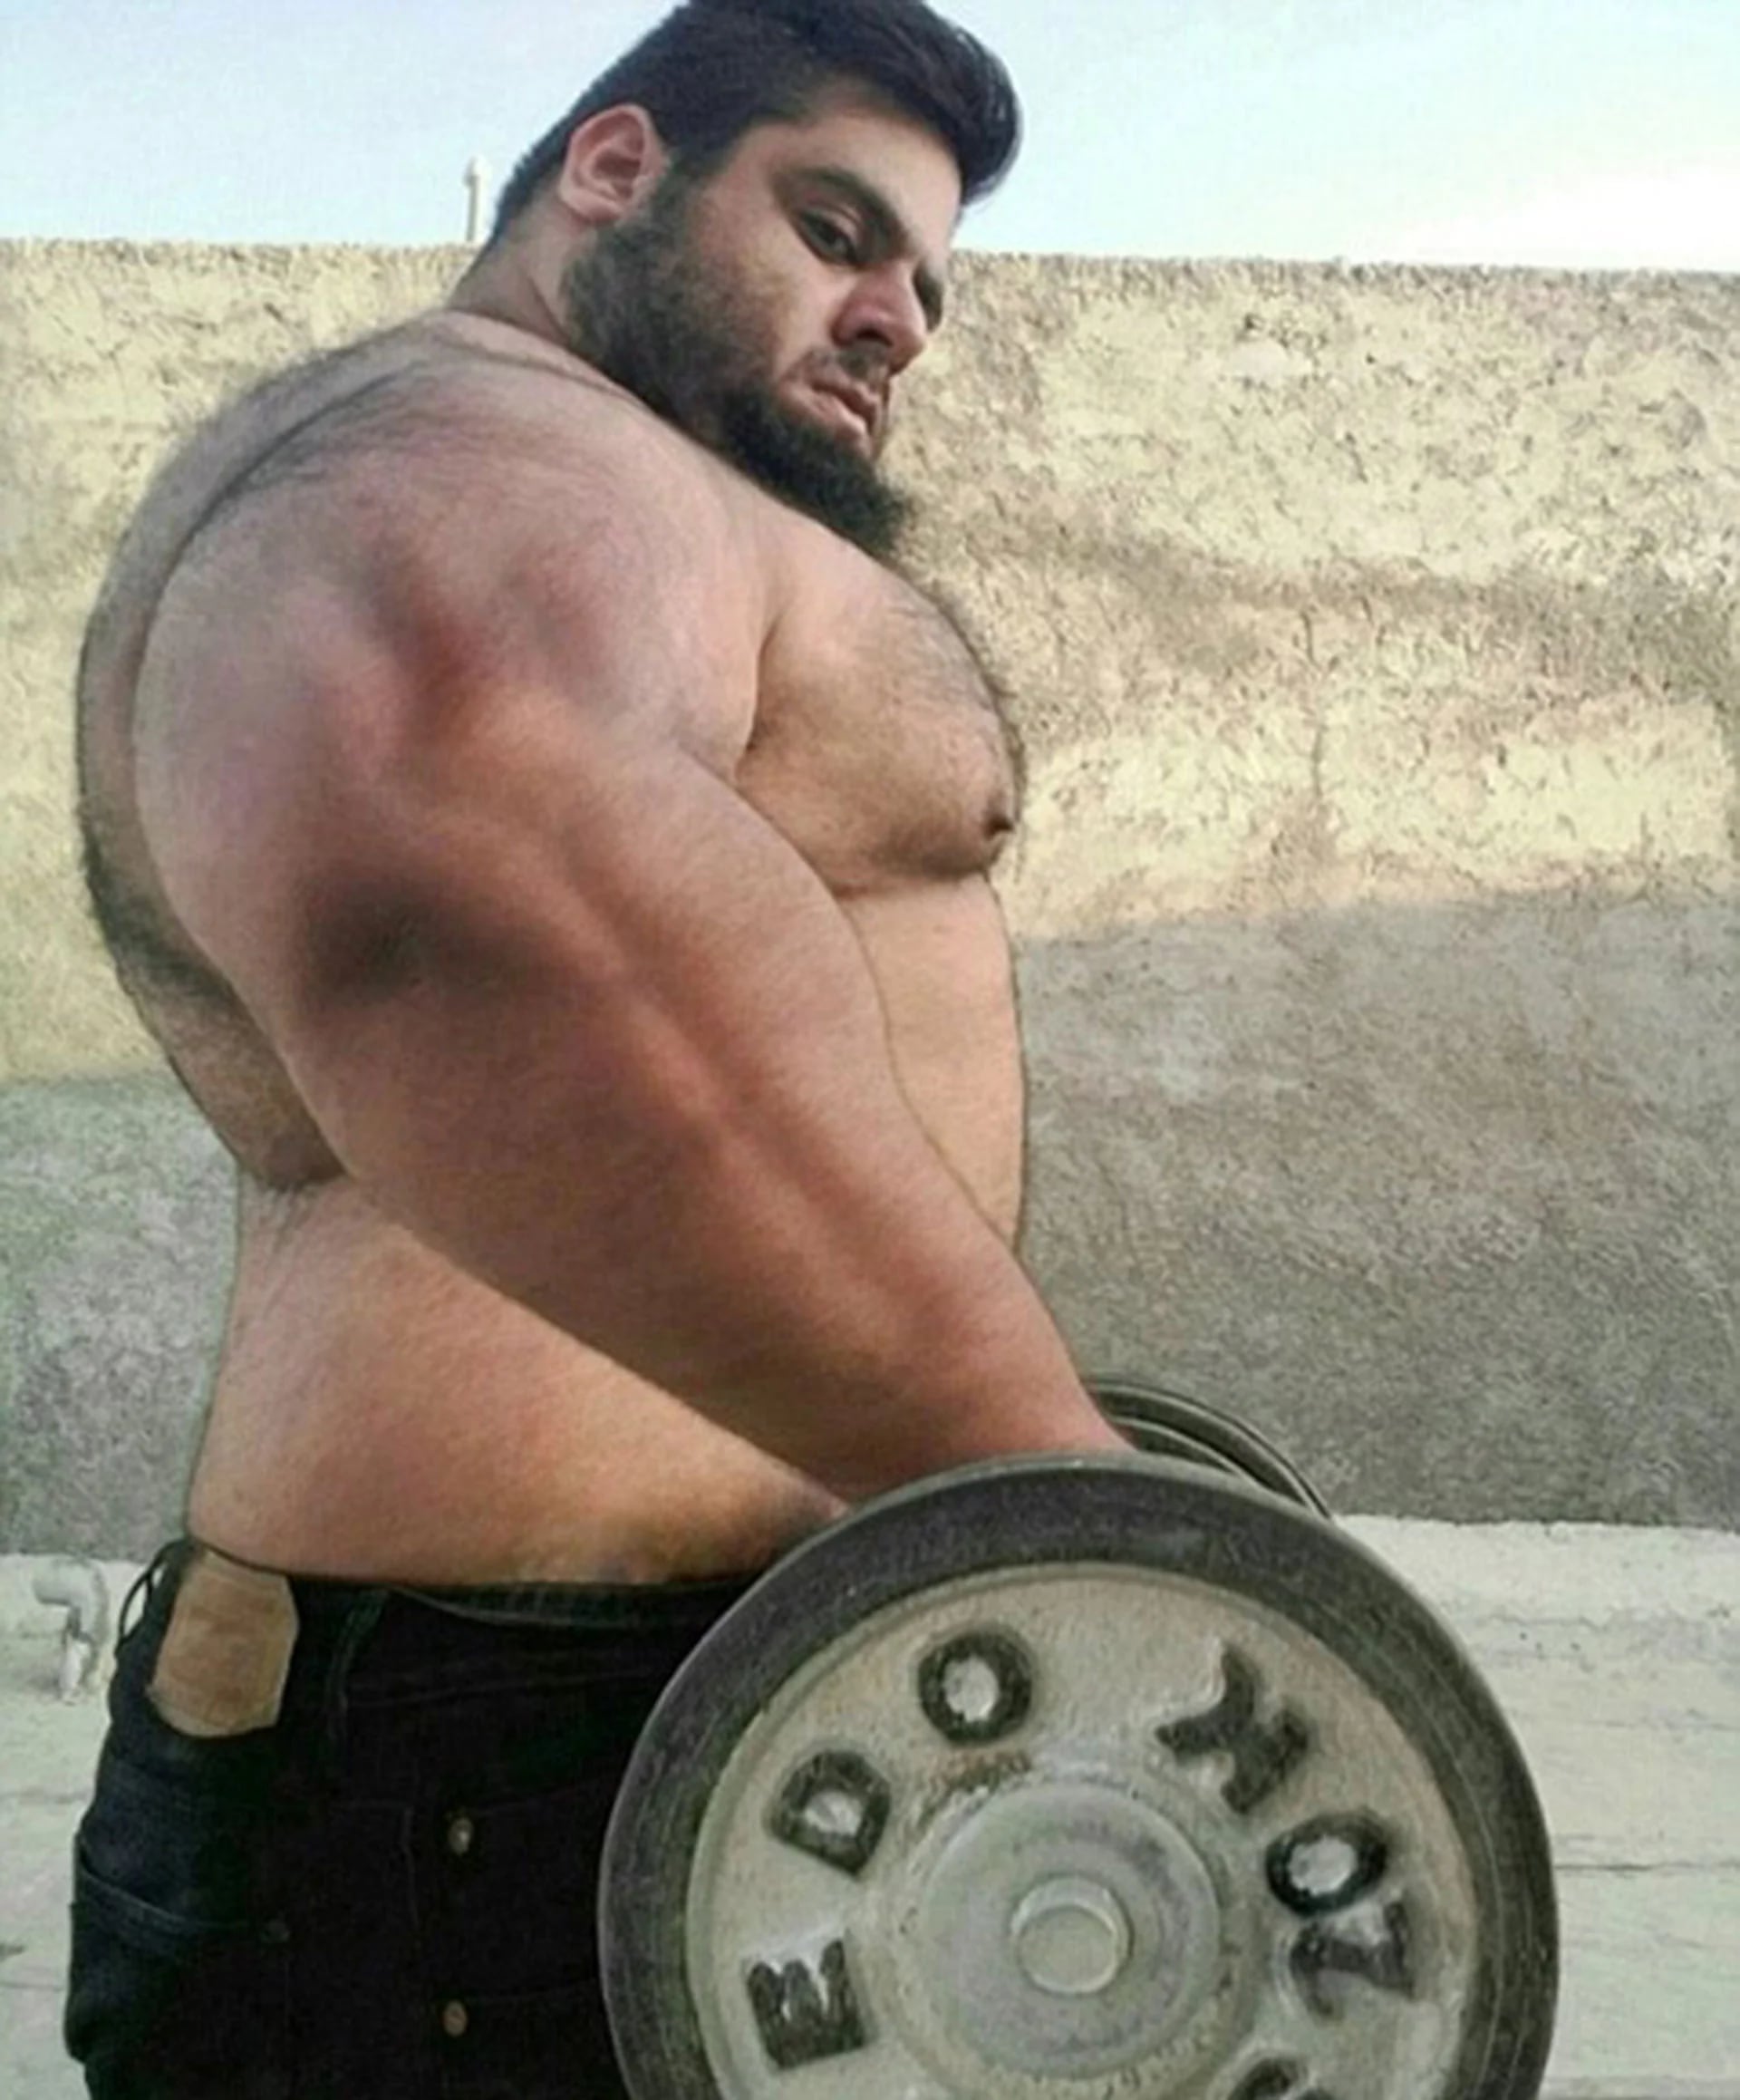 Gharibi puede levantar hasta 180 kilogramos. Narra su vida deportiva en Instagram, donde anunció que ahora se unirá al ejército iraní en Siria